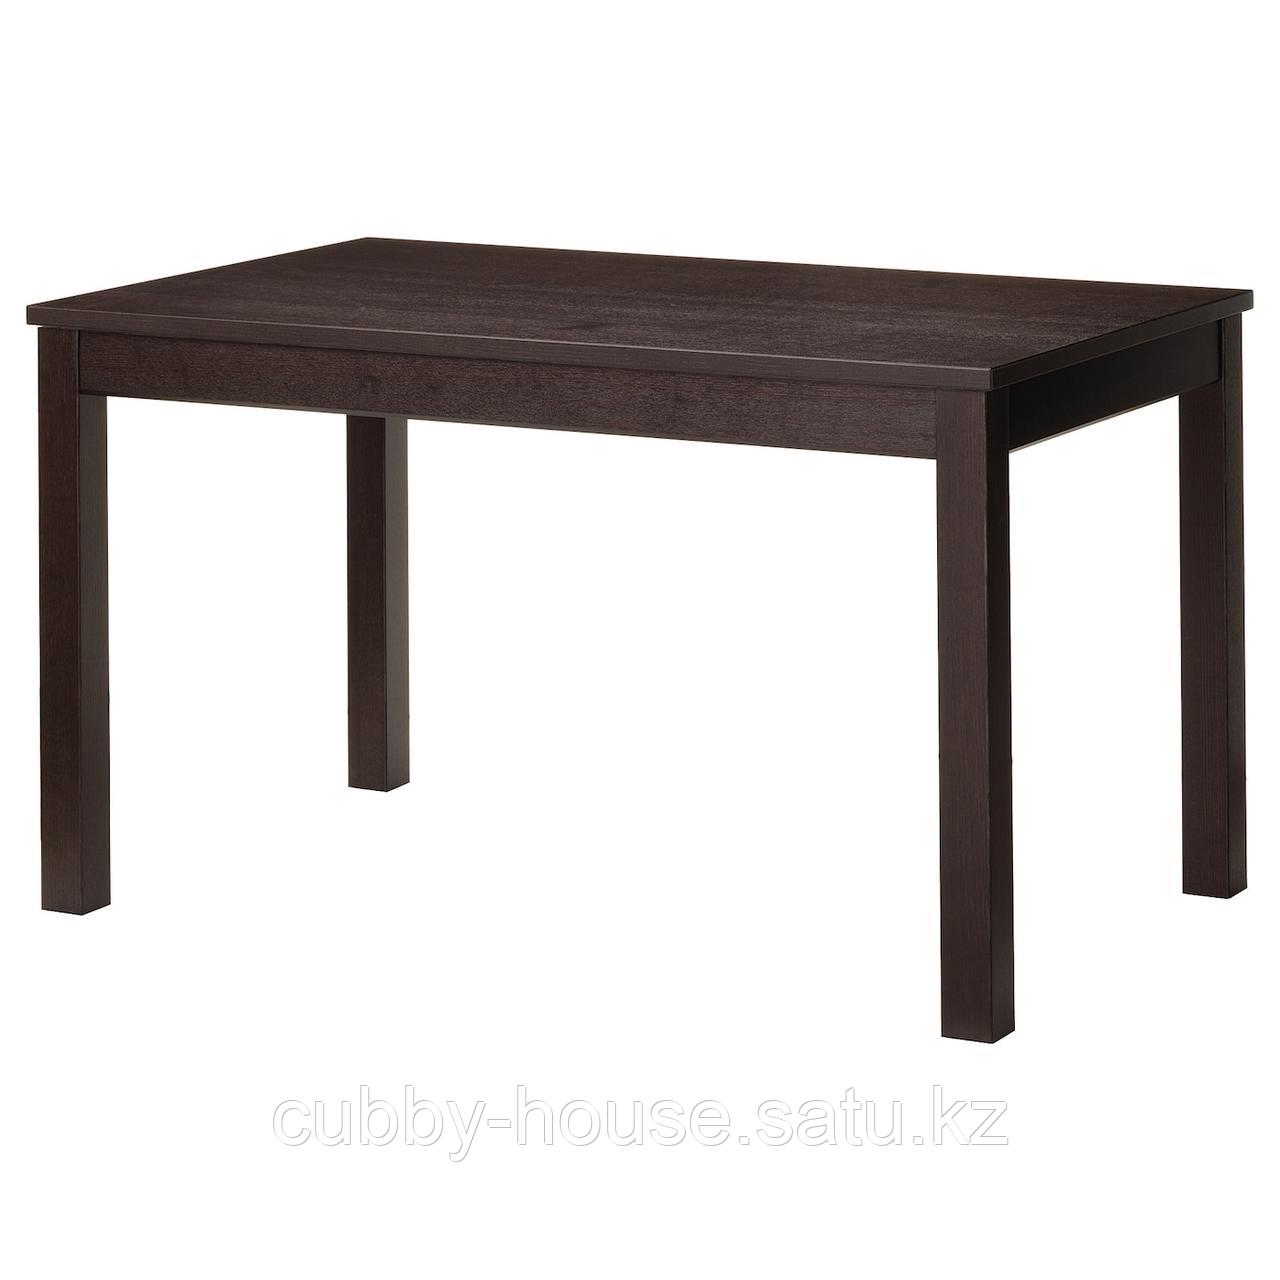 ЛАНЕБЕРГ Раздвижной стол, коричневый, 130/190x80 см